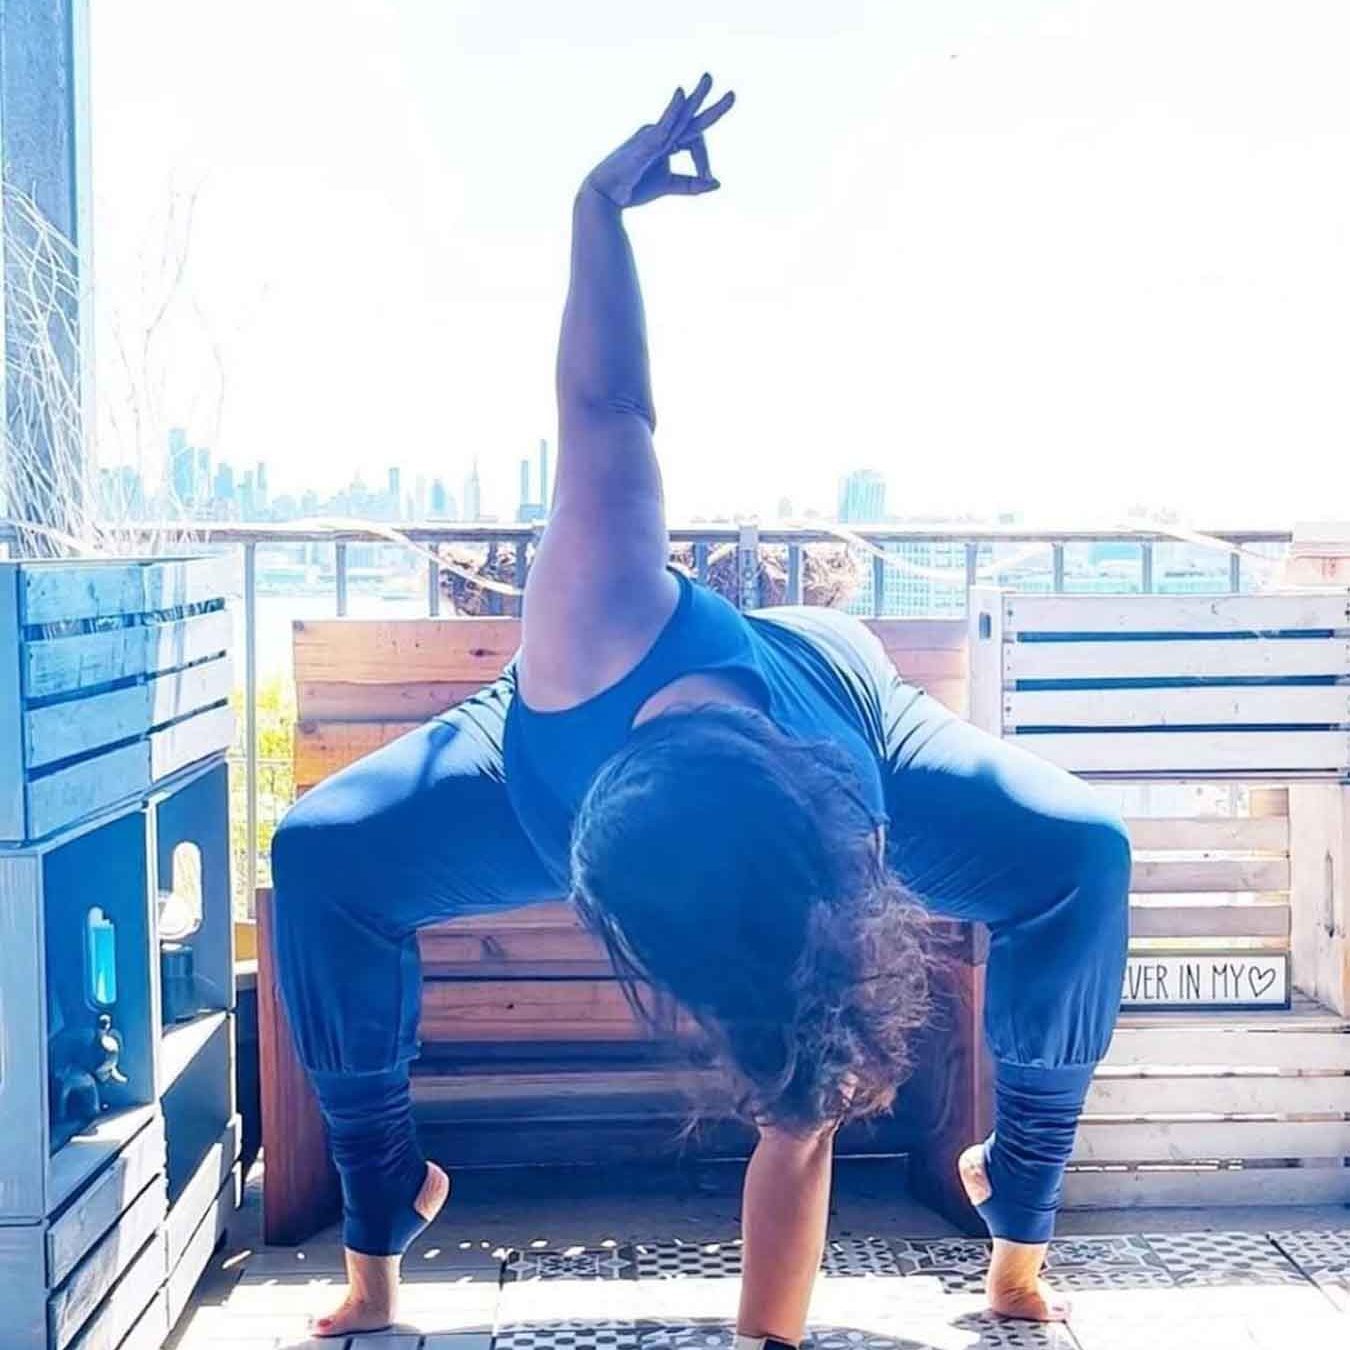 Frau steht in einer Yogapose auf dem Boden eines Balkons und trägt einen blauen Overall mit Stulpen. Sie stützt sich vornüber gebeugt mit einer Hand ab, die andere hält sie über sich im Chin Mudra.